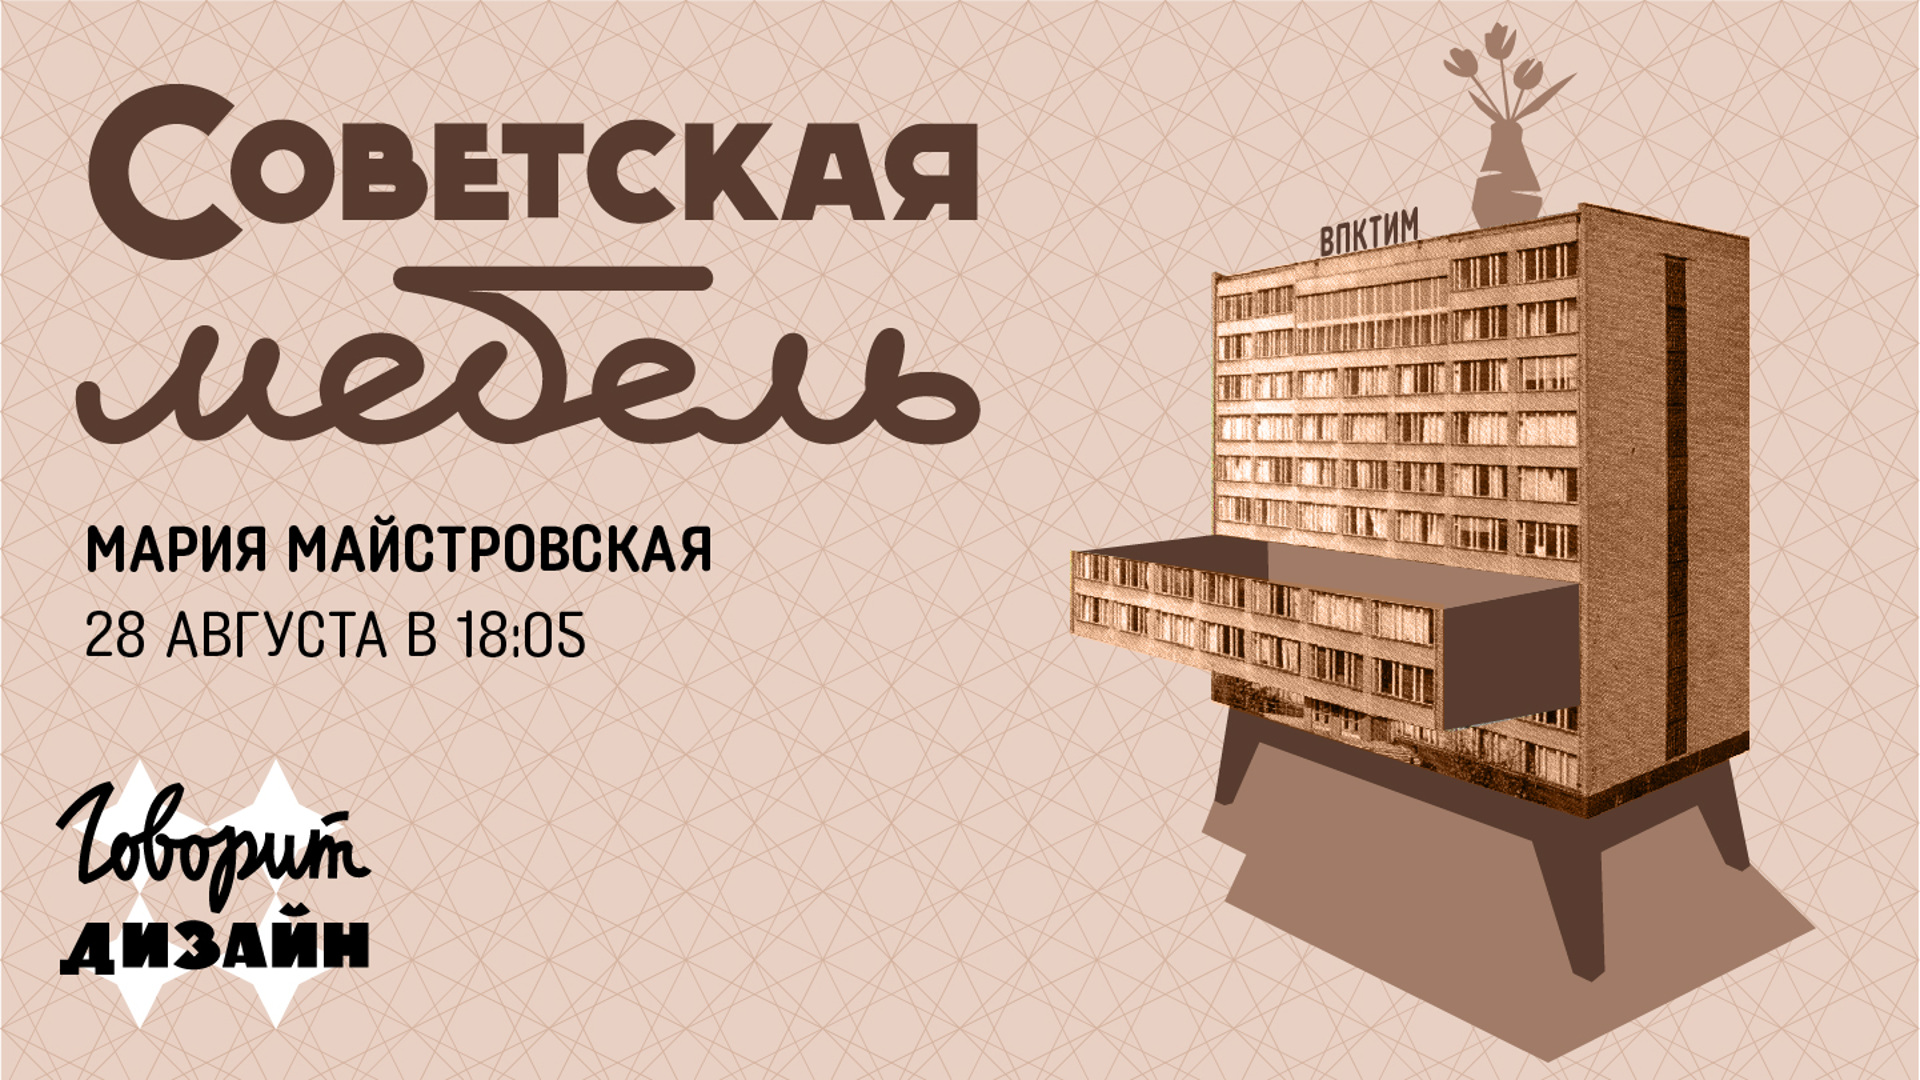 Реклама мебели СССР